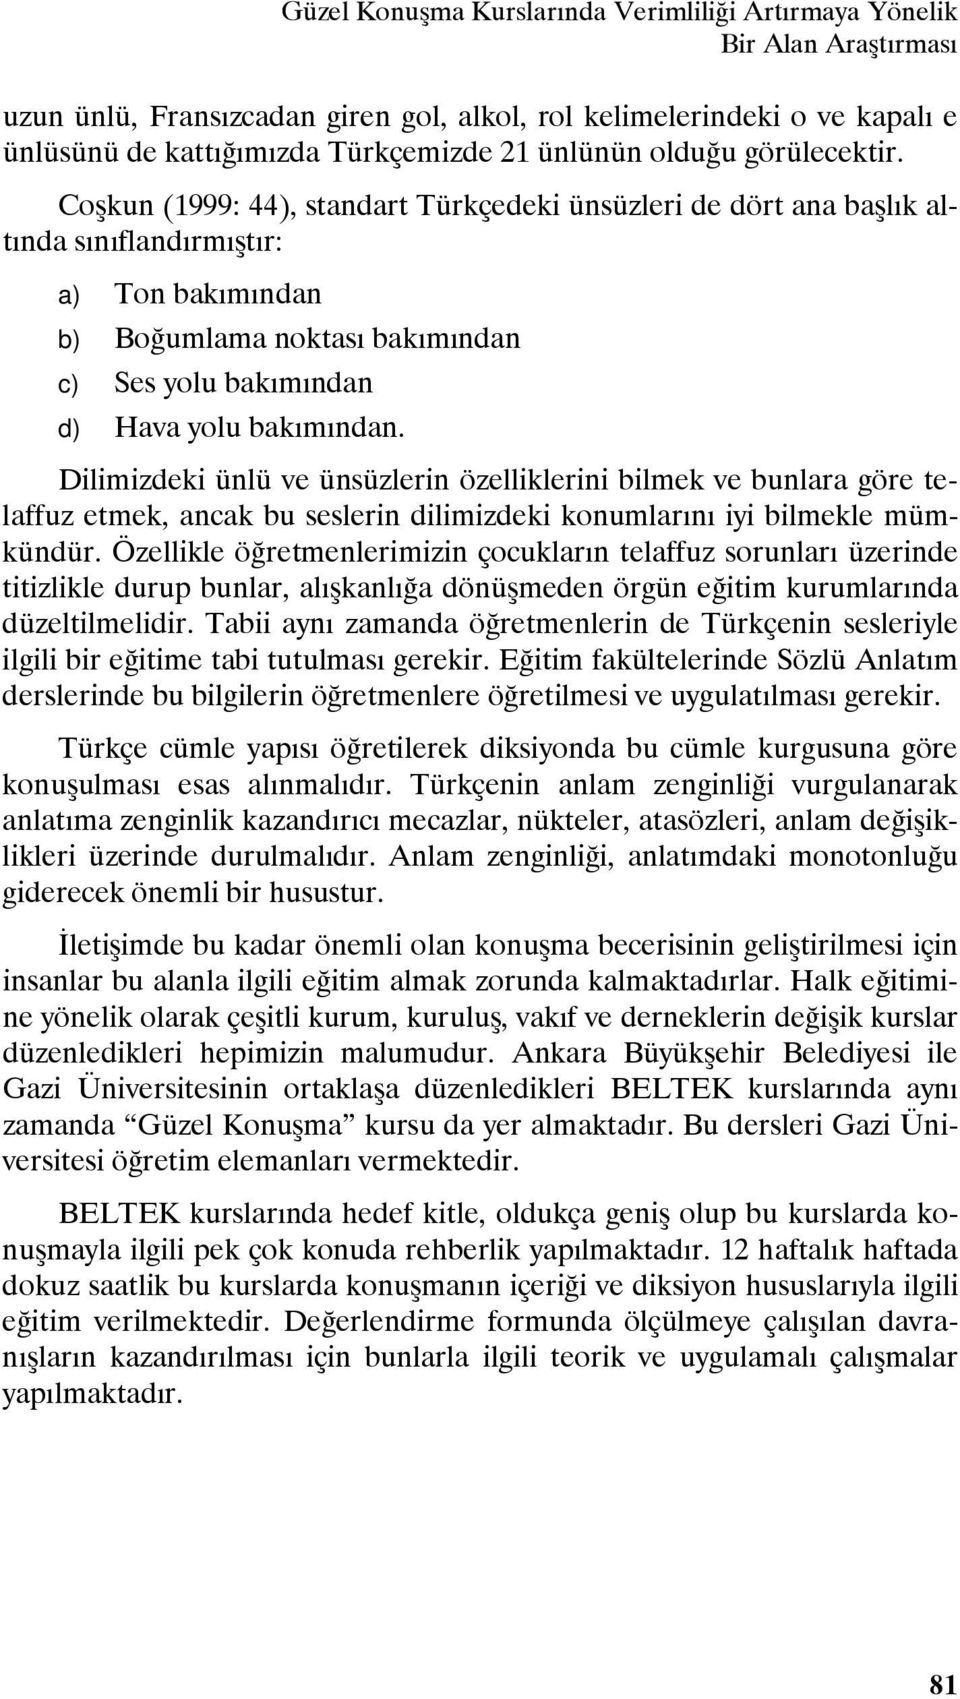 Coşkun (1999: 44), standart Türkçedeki ünsüzleri de dört ana başlık altında sınıflandırmıştır: a) Ton bakımından b) Boğumlama noktası bakımından c) Ses yolu bakımından d) Hava yolu bakımından.